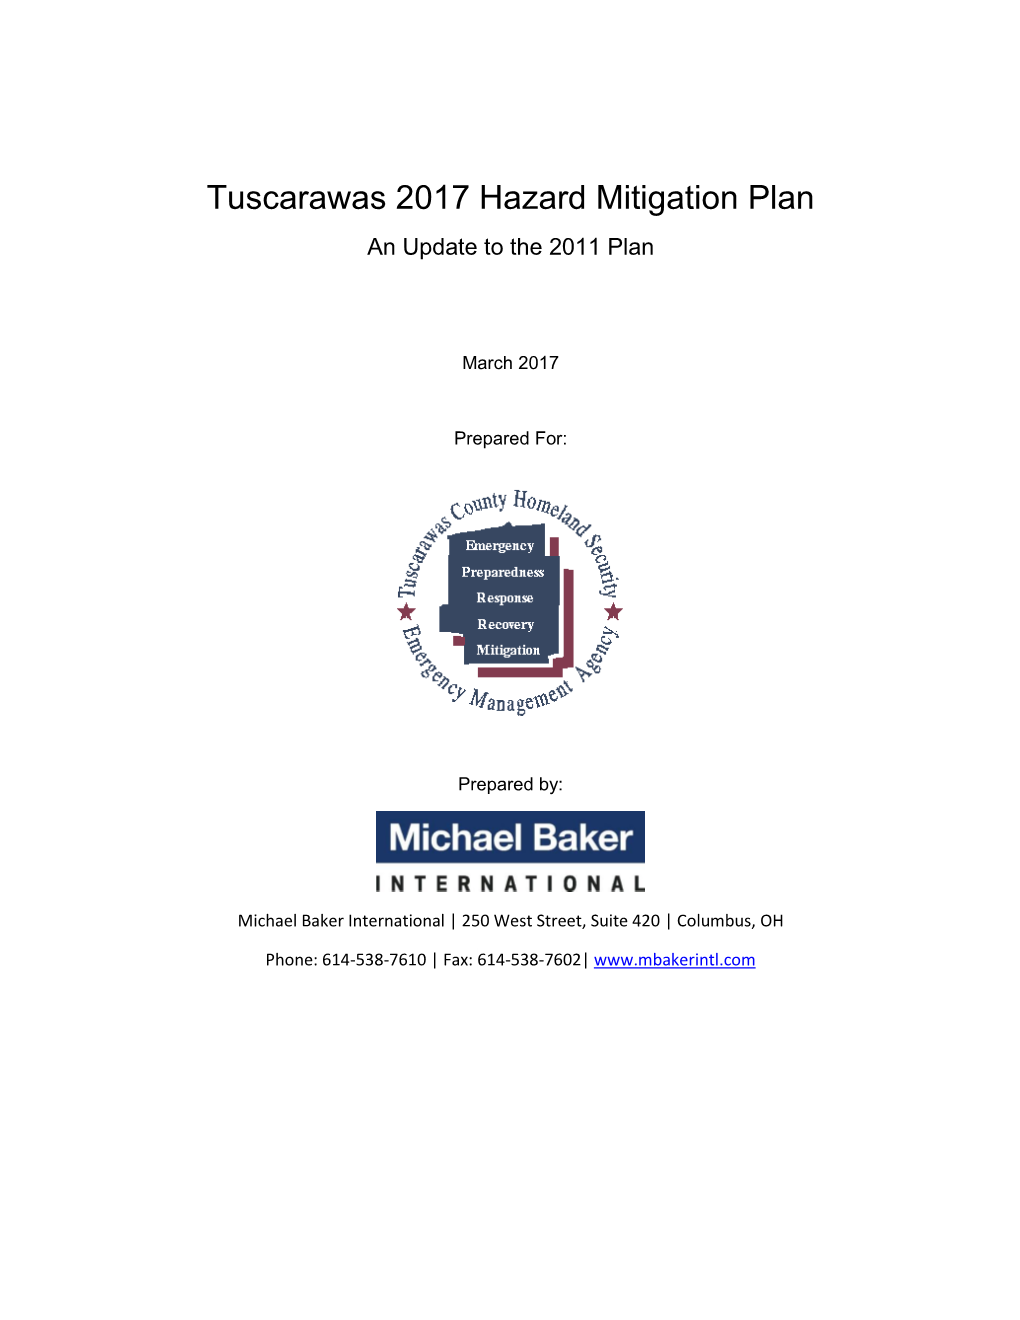 Tuscarawas 2017 Hazard Mitigation Plan